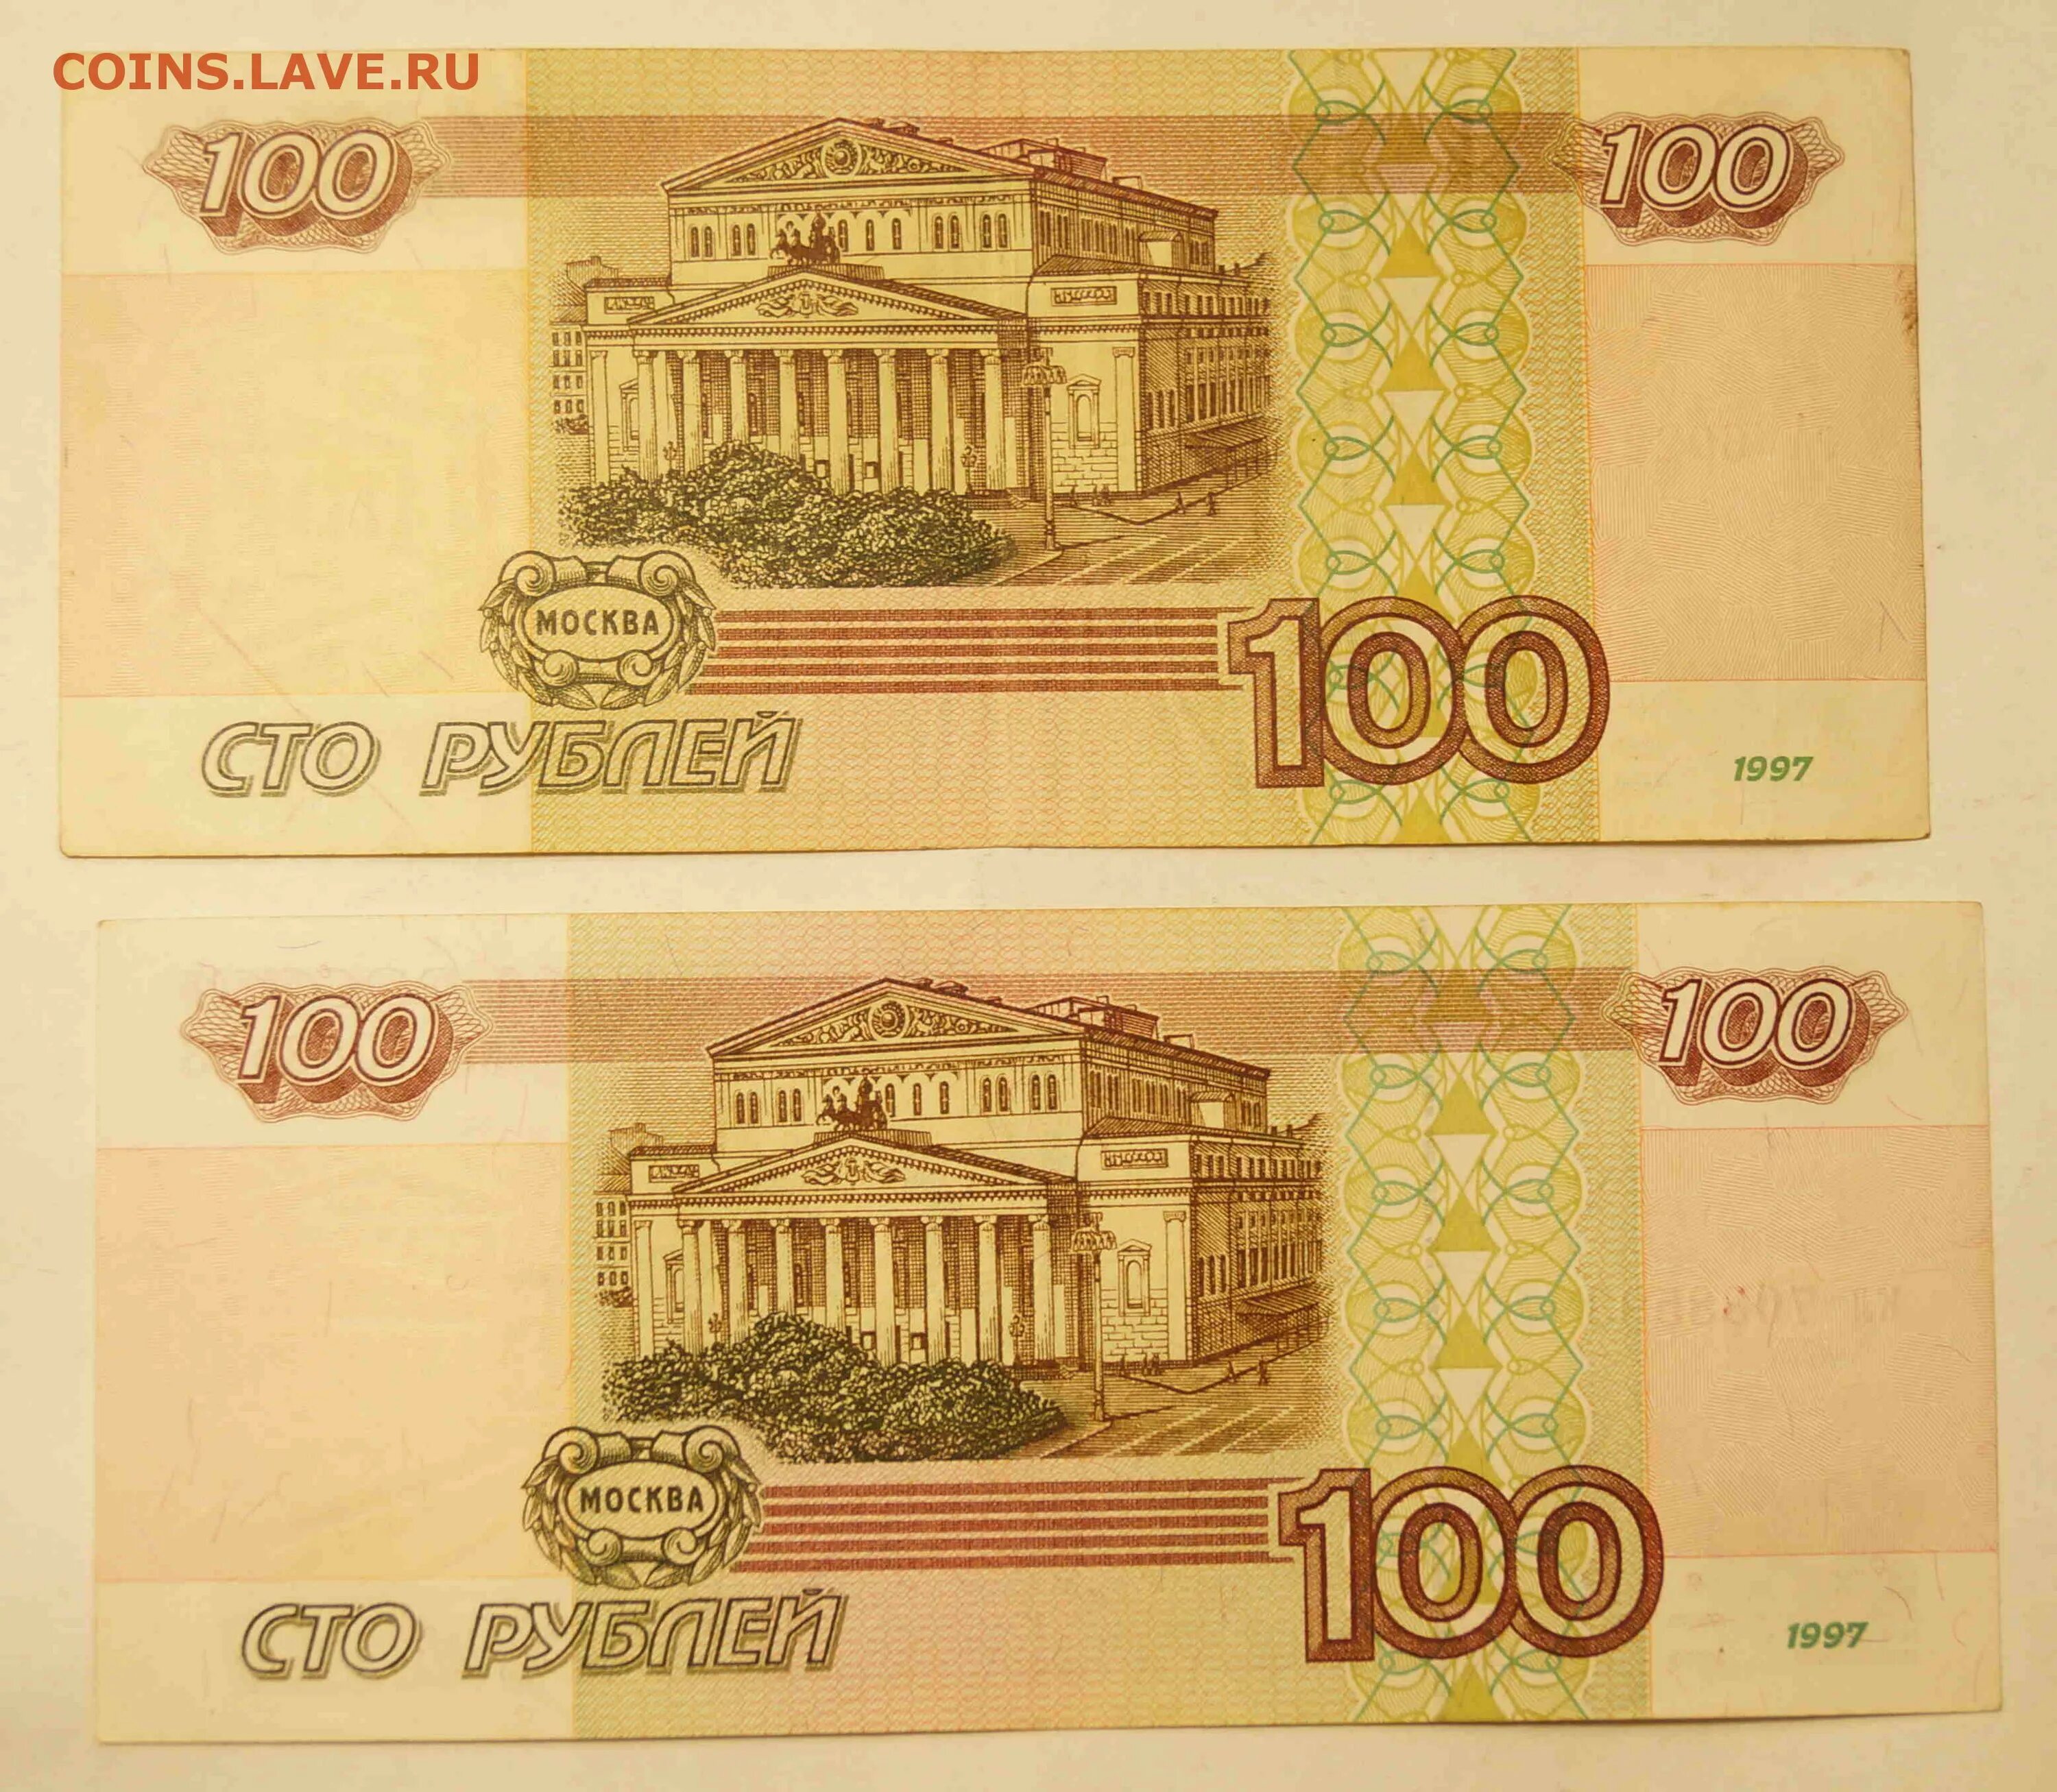 100.000 3. Купюра 100 тысяч рублей 1995. СТО тысяч рублей купюра. 100 000 Рублей 1995 года. Купюра 100.000 руб.